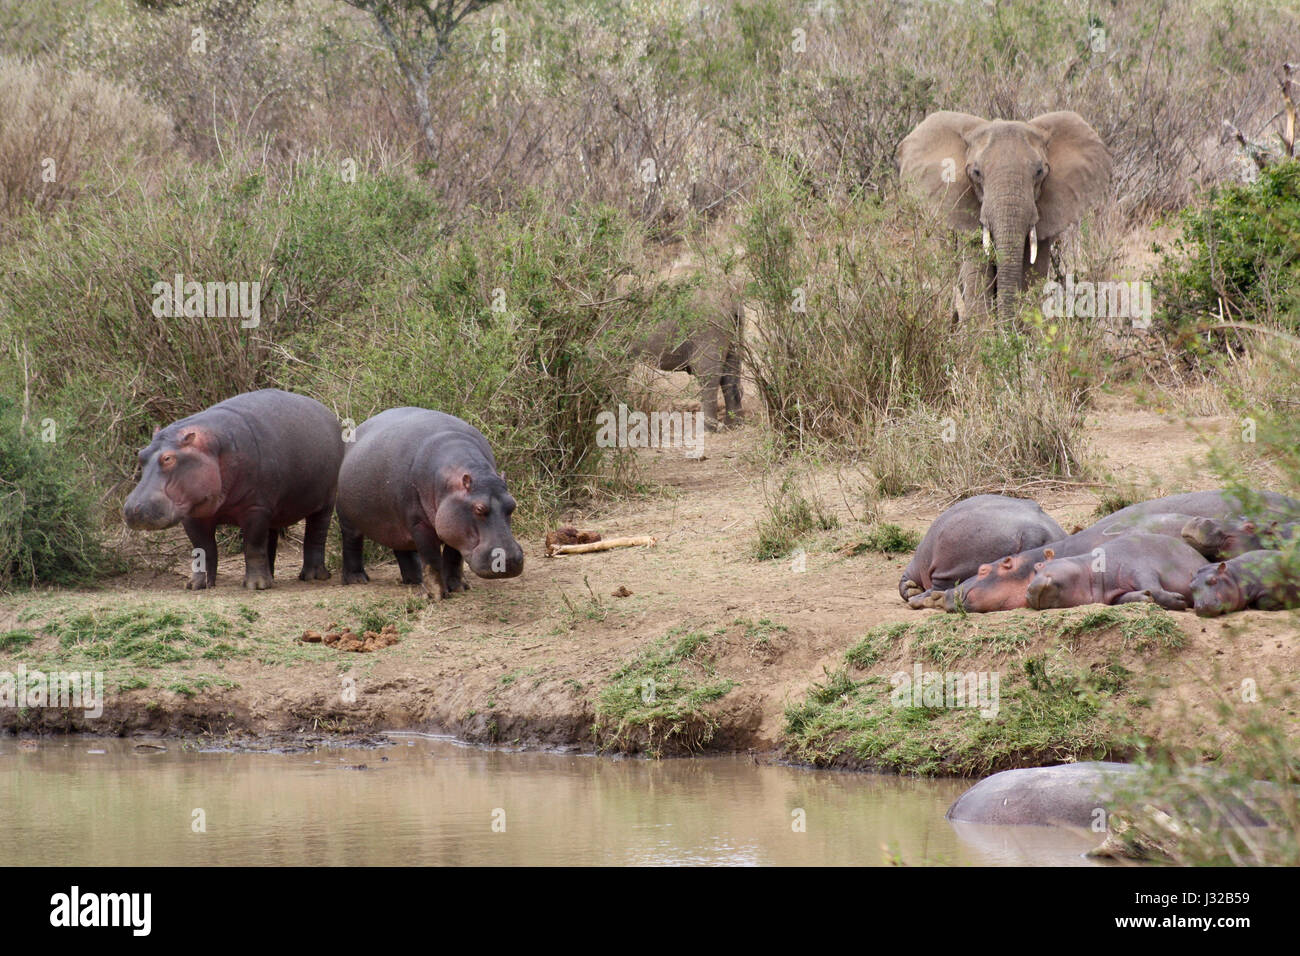 Hippopotamuses (Hippopotamus amphibius) and elephants (Loxodonta africana) gather on the banks of the Ewaso Nyiro river. Laikipia, Kenya. Stock Photo